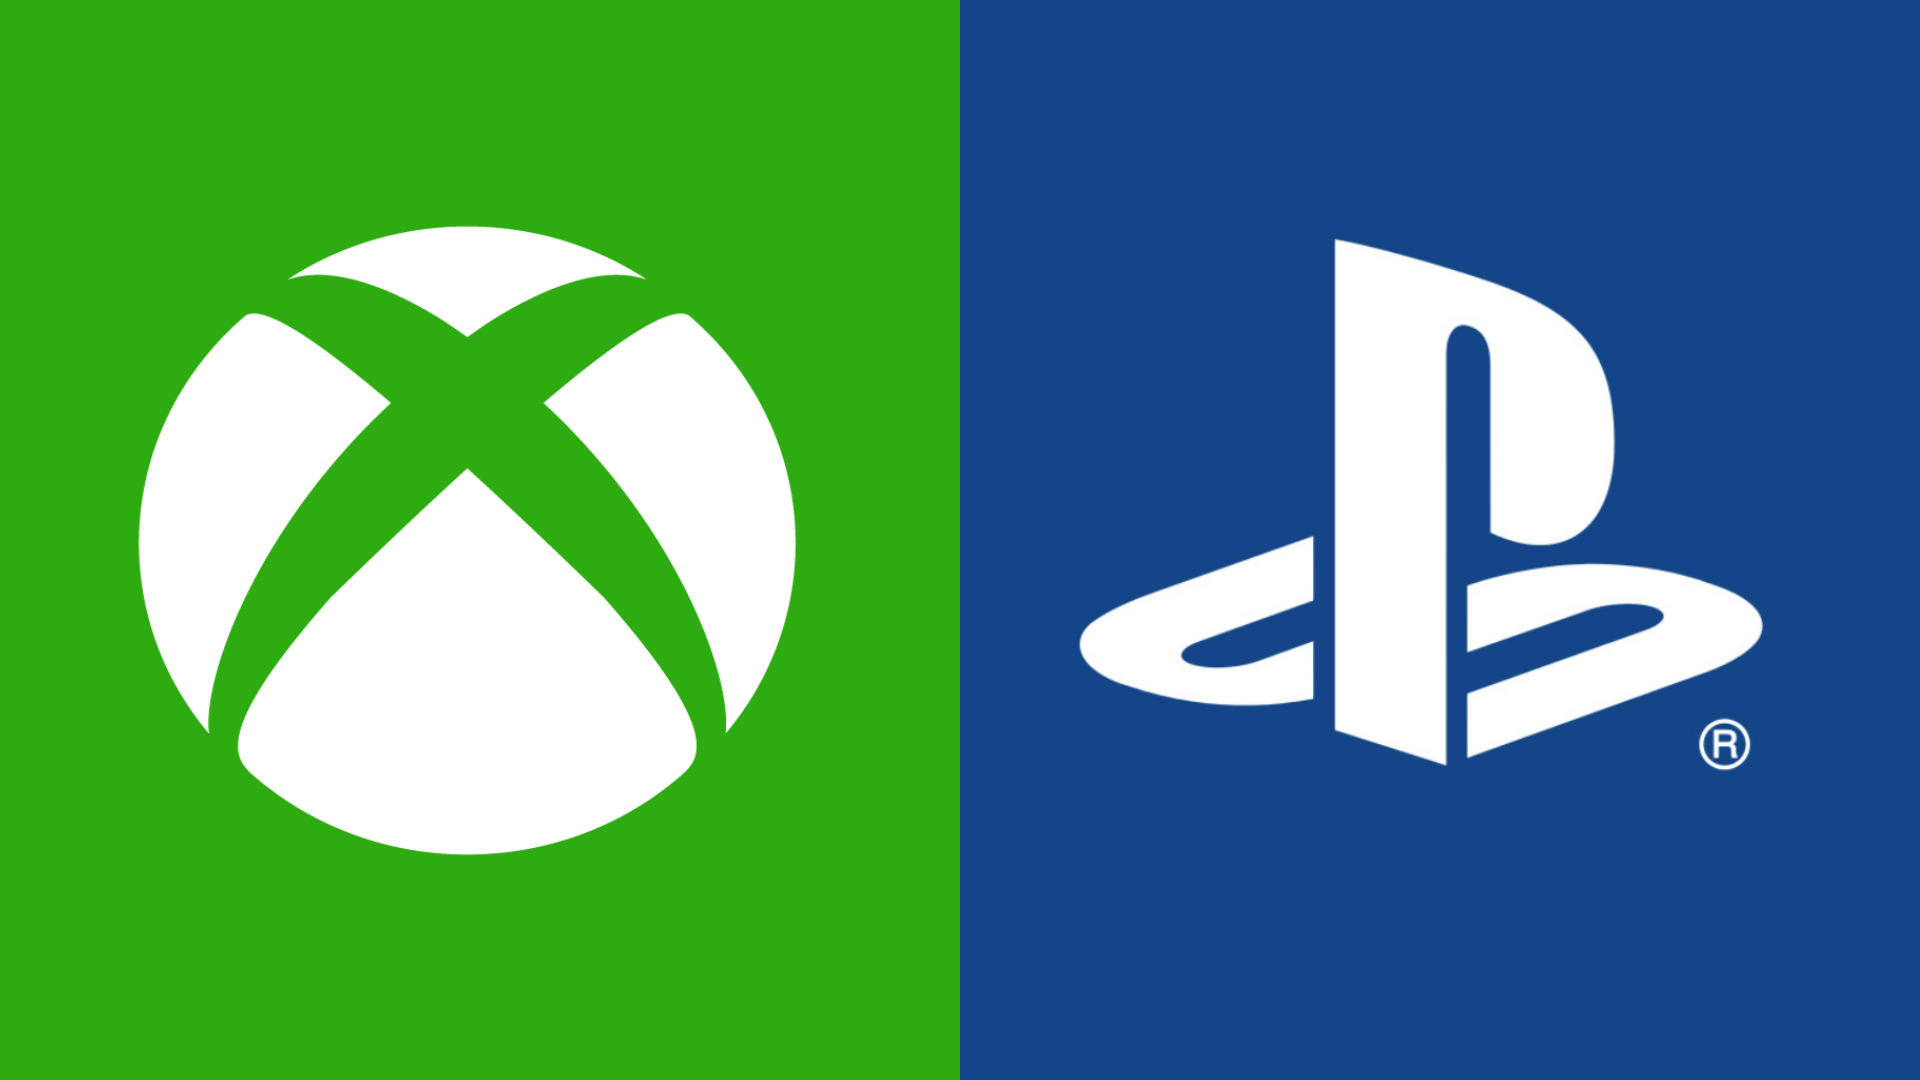 Microsoft: на Playstation вышло более 280 эксклюзивов в 2021 году, многие из них качественнее эксклюзивов Xbox: с сайта NEWXBOXONE.RU